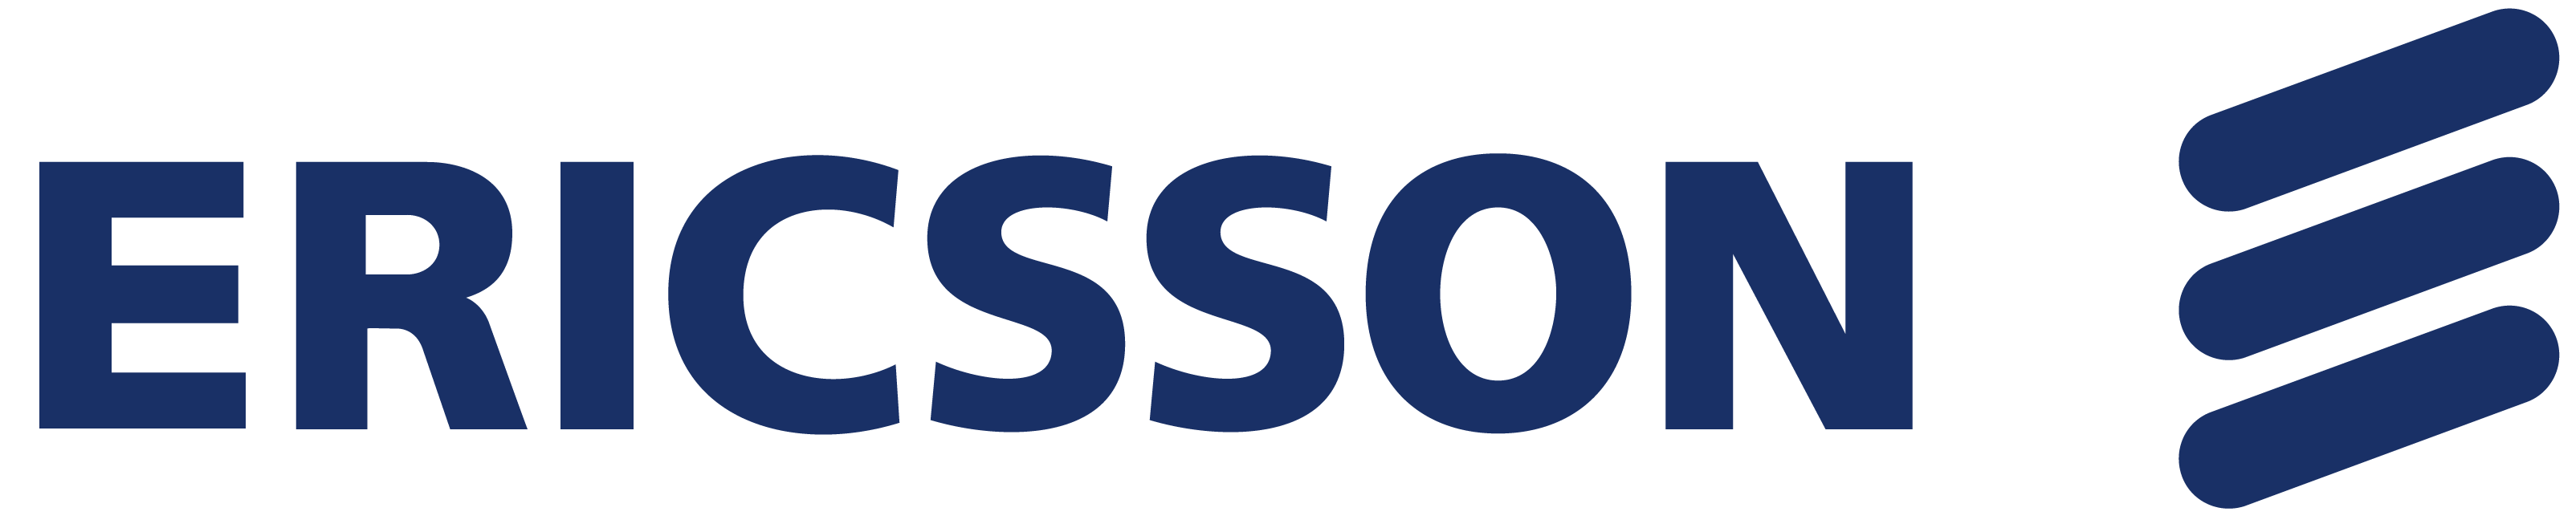 Telefonaktiebolaget LM Ericsson Logo - Ericsson Logos